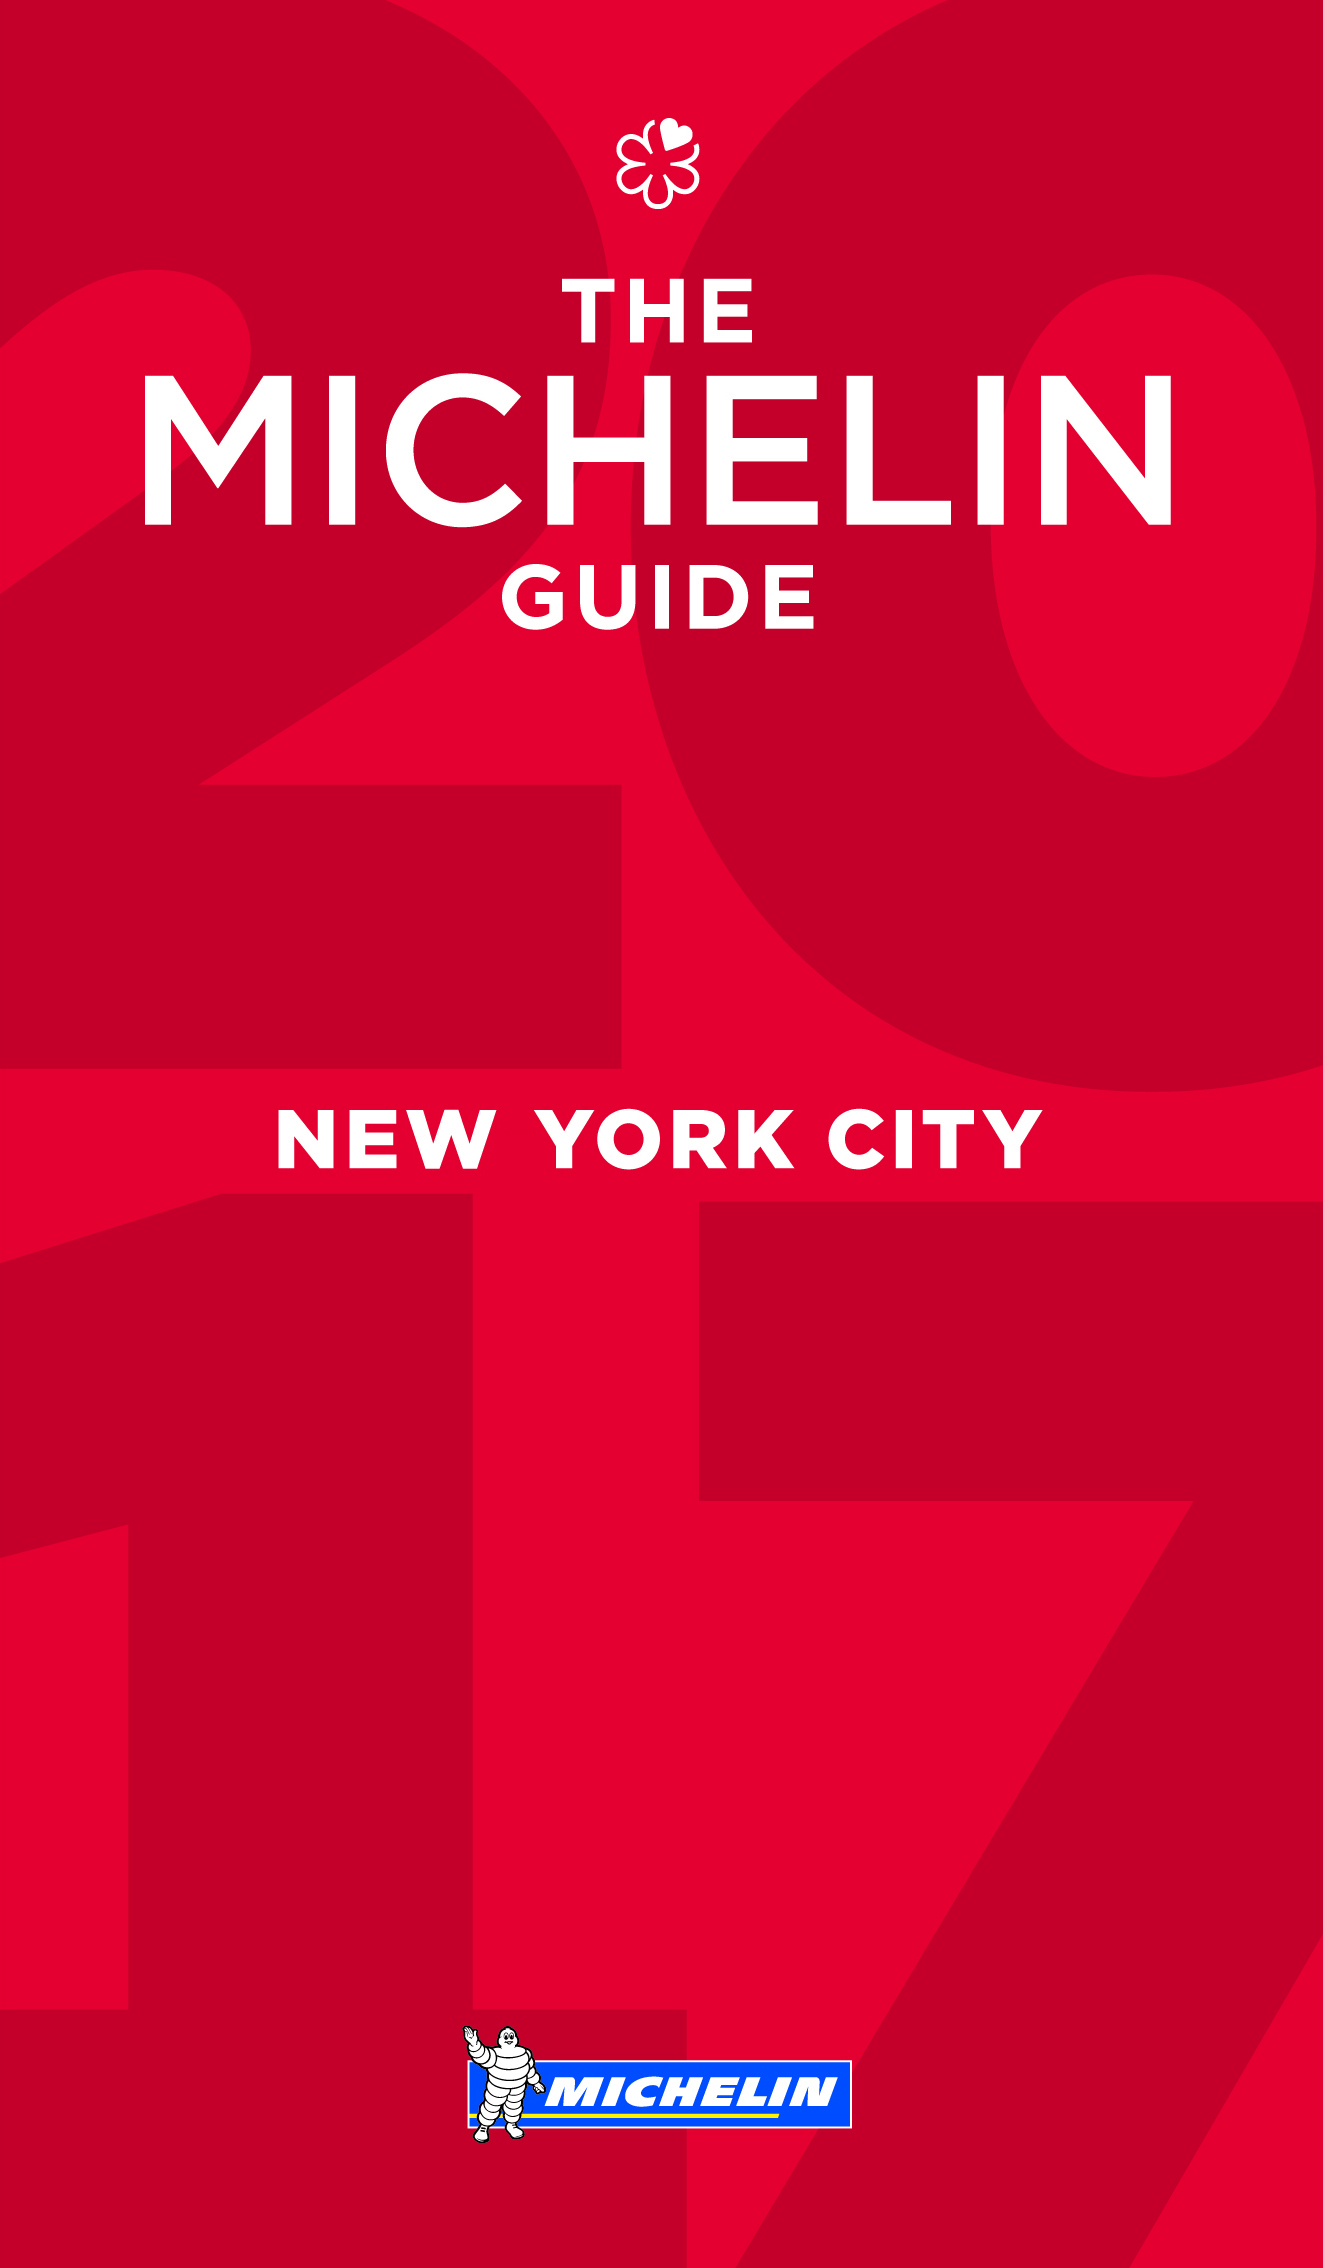 La guía MICHELIN New York City 2017